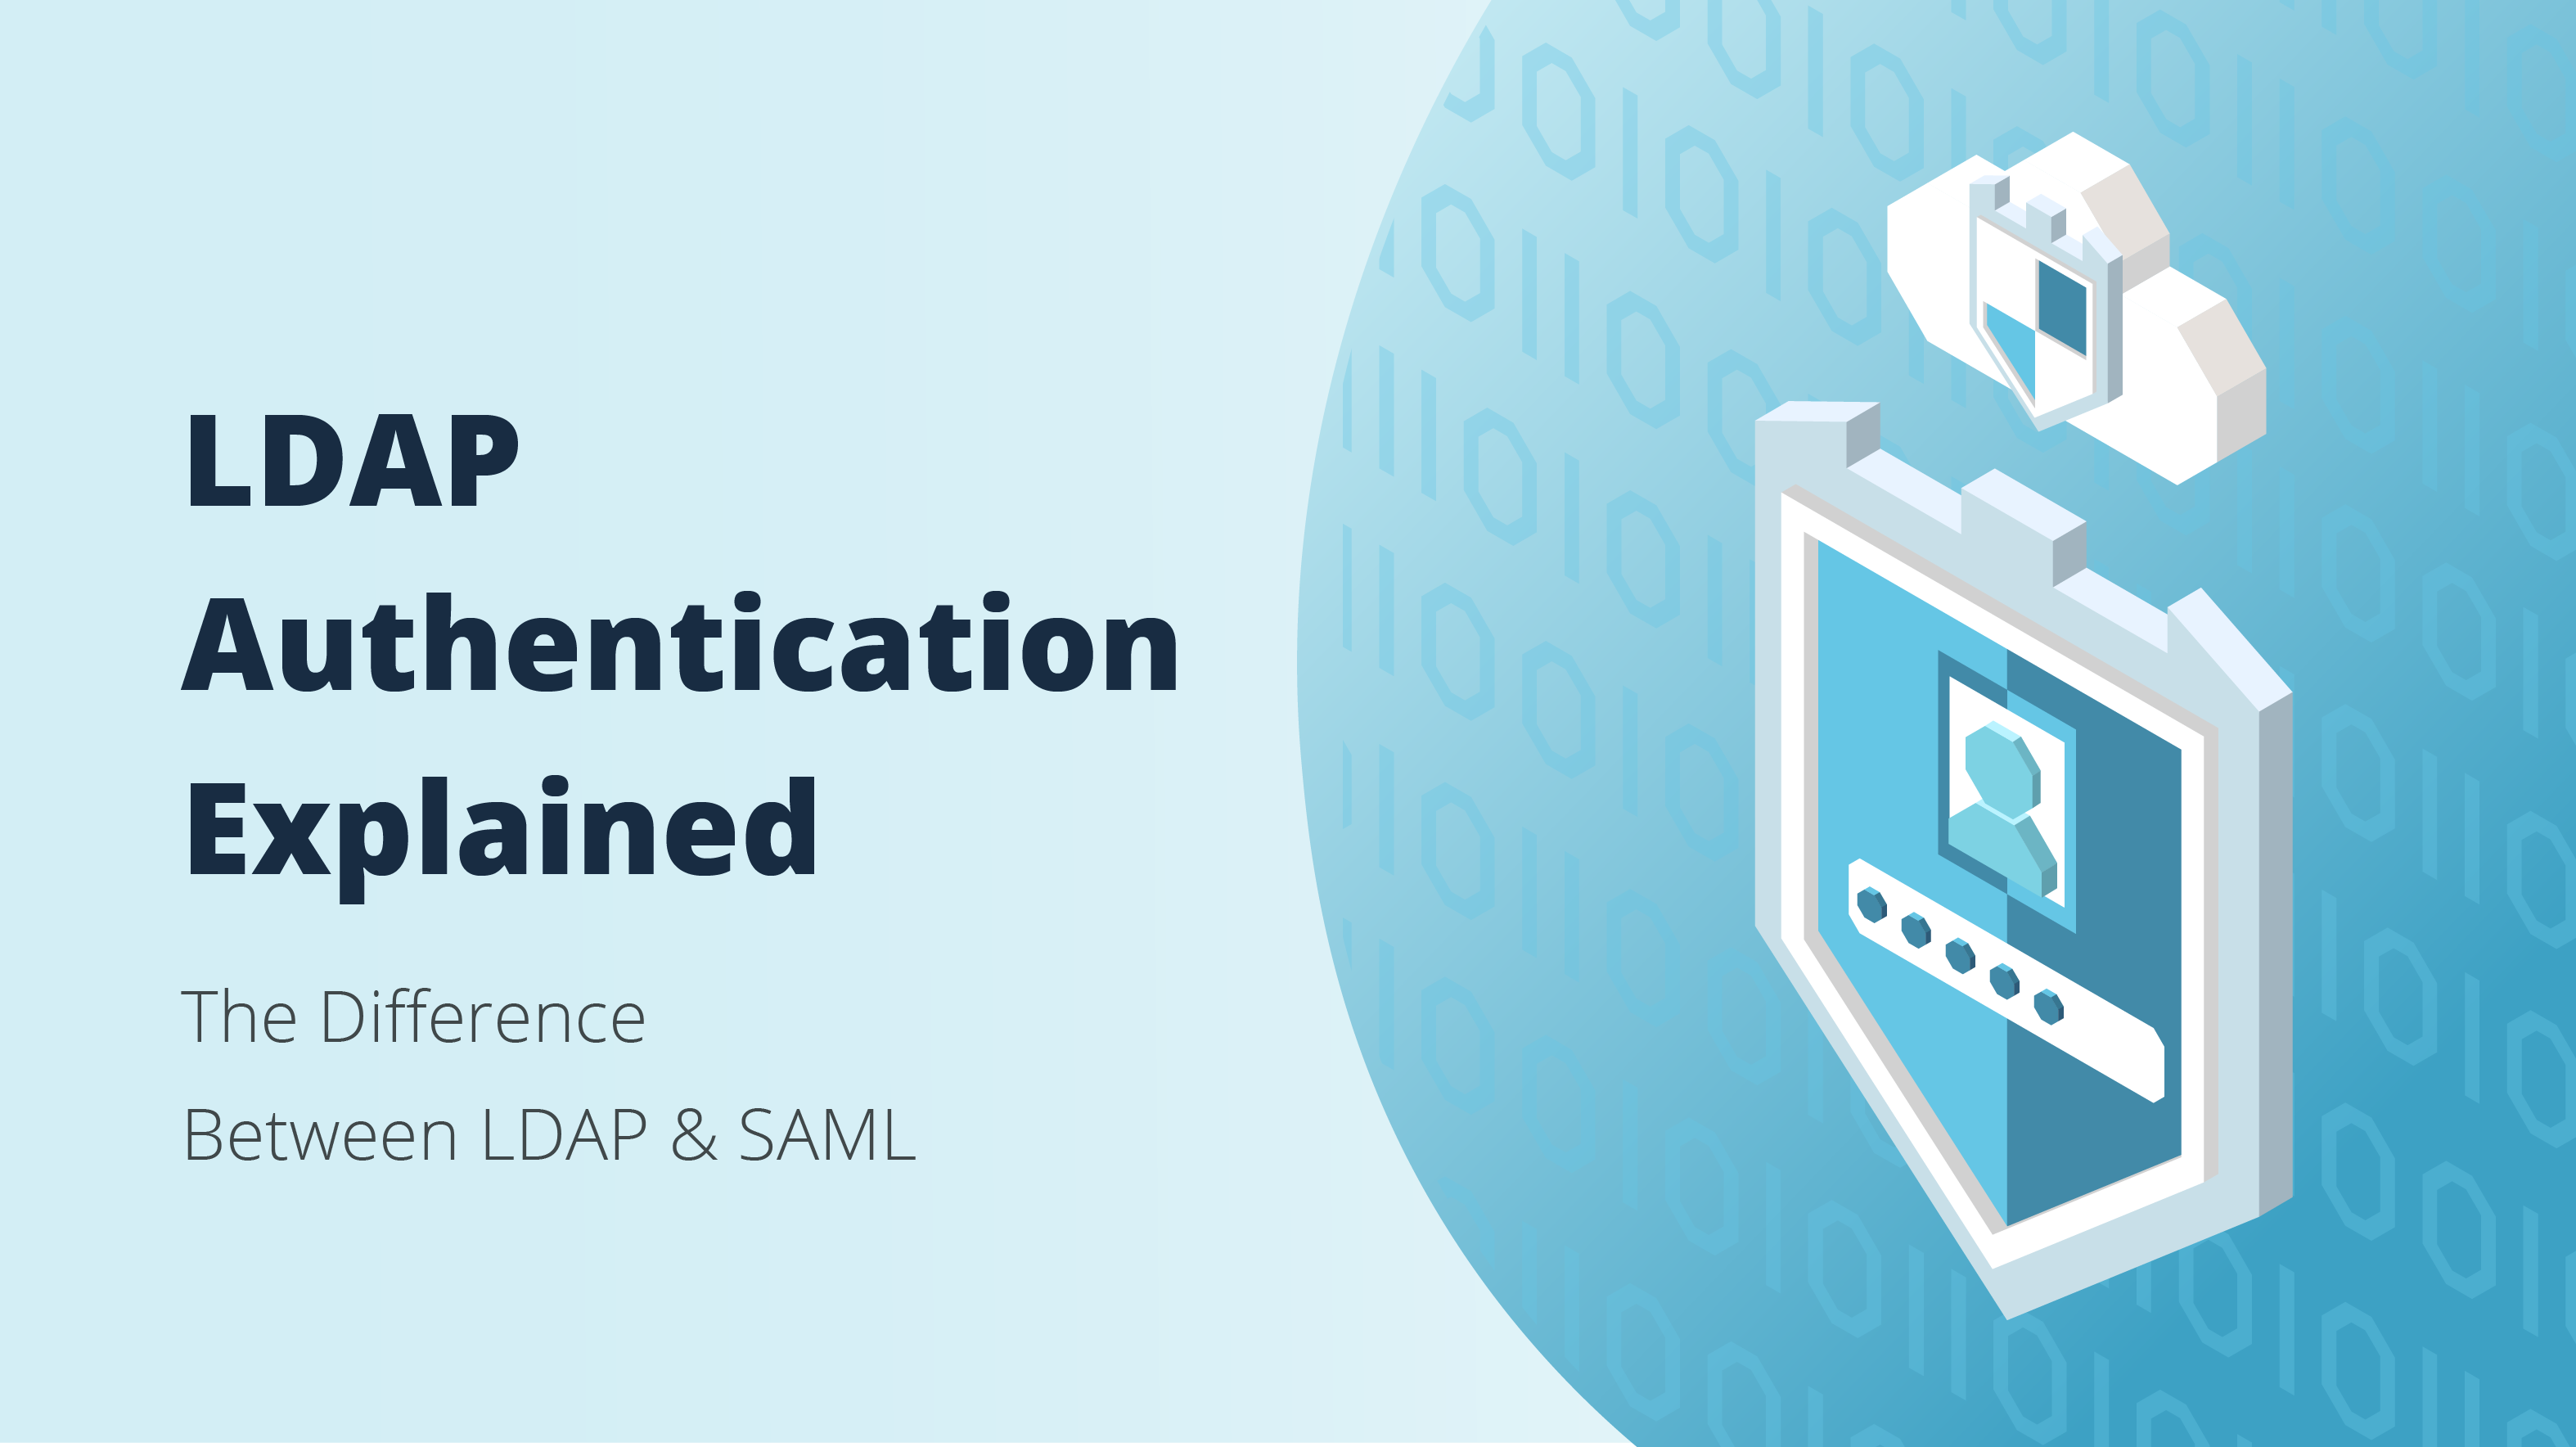 LDAP authentication explaied. LDAP vs SAML